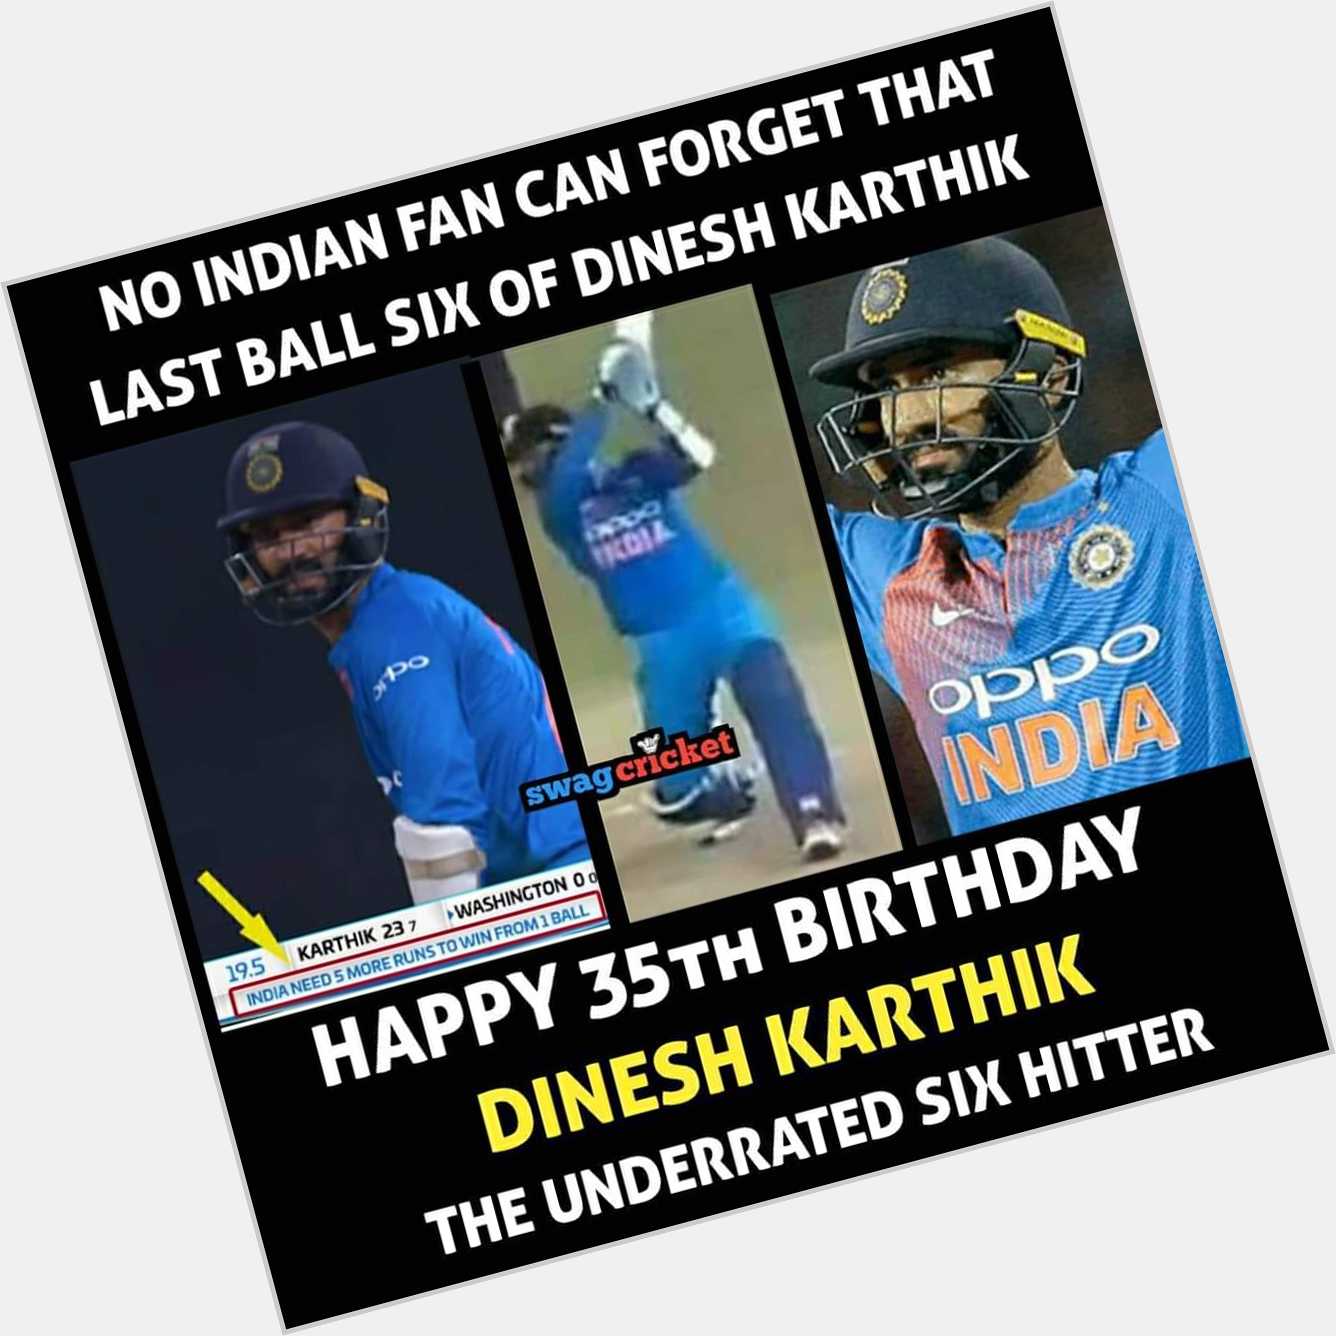 Happy Birthday Dinesh Karthik! 